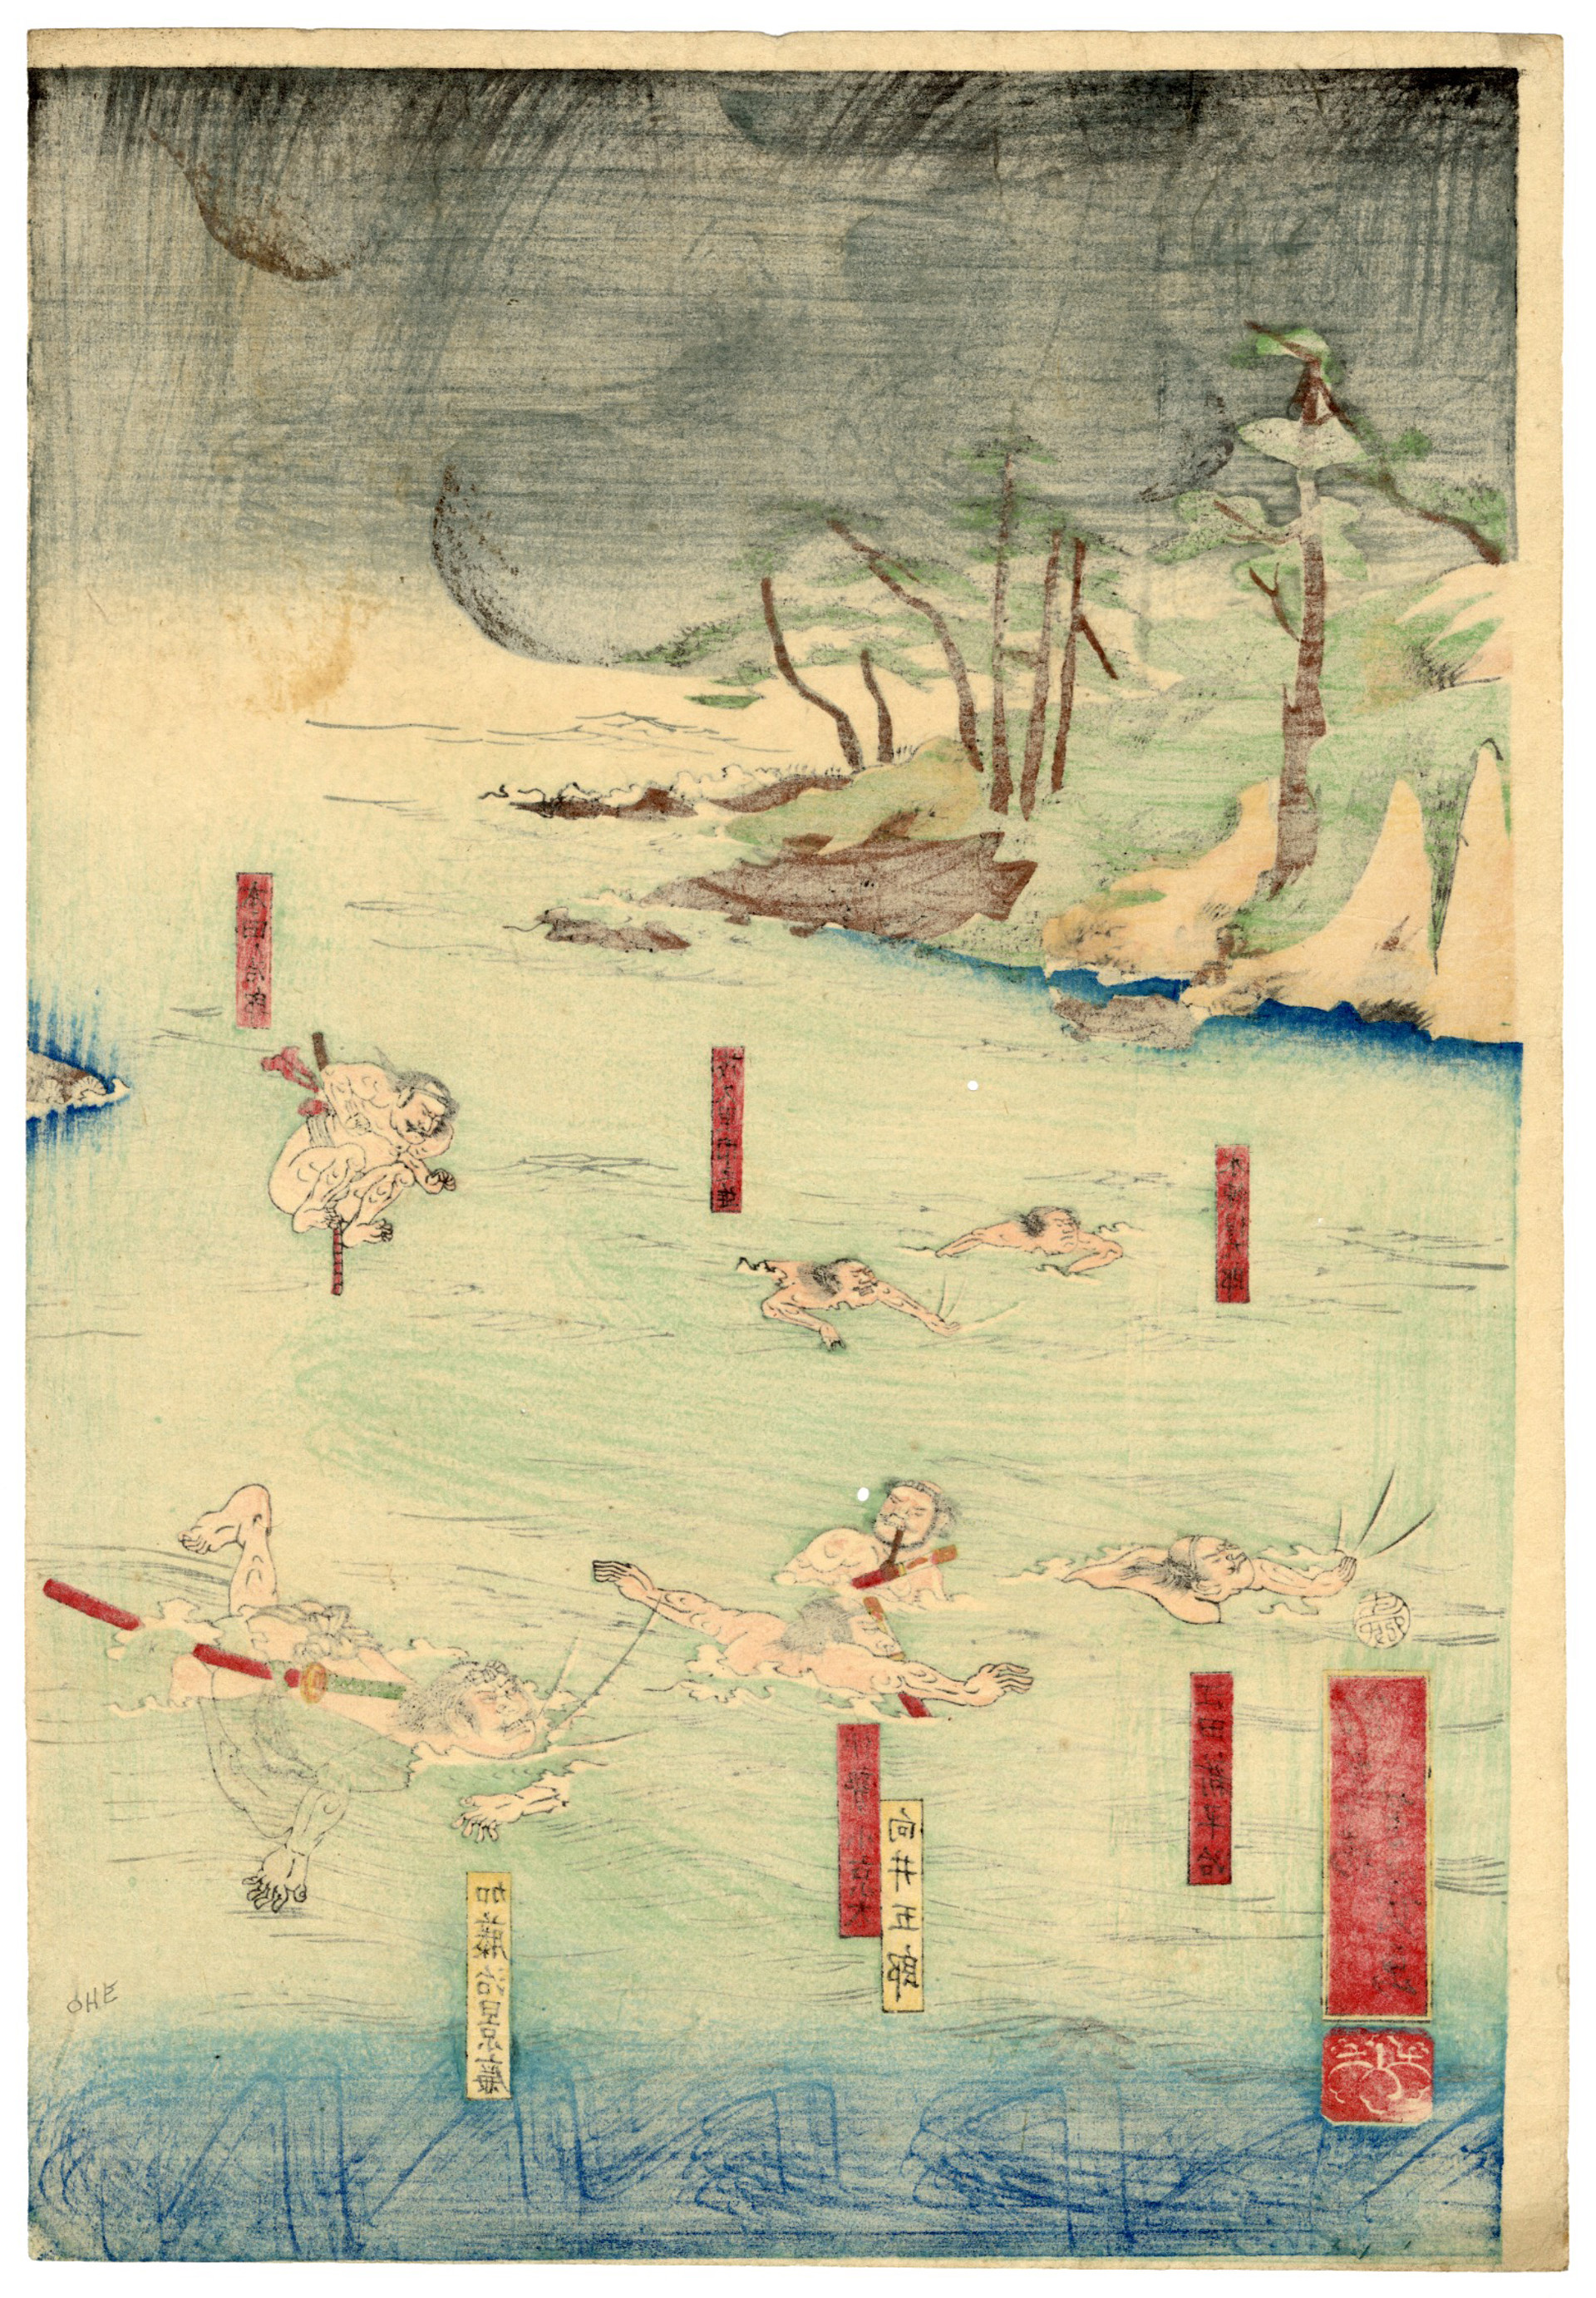 Minamoto no Yoritomo Crosses the Uji River on a Raft and defeats the Taira by Yoshi-iku